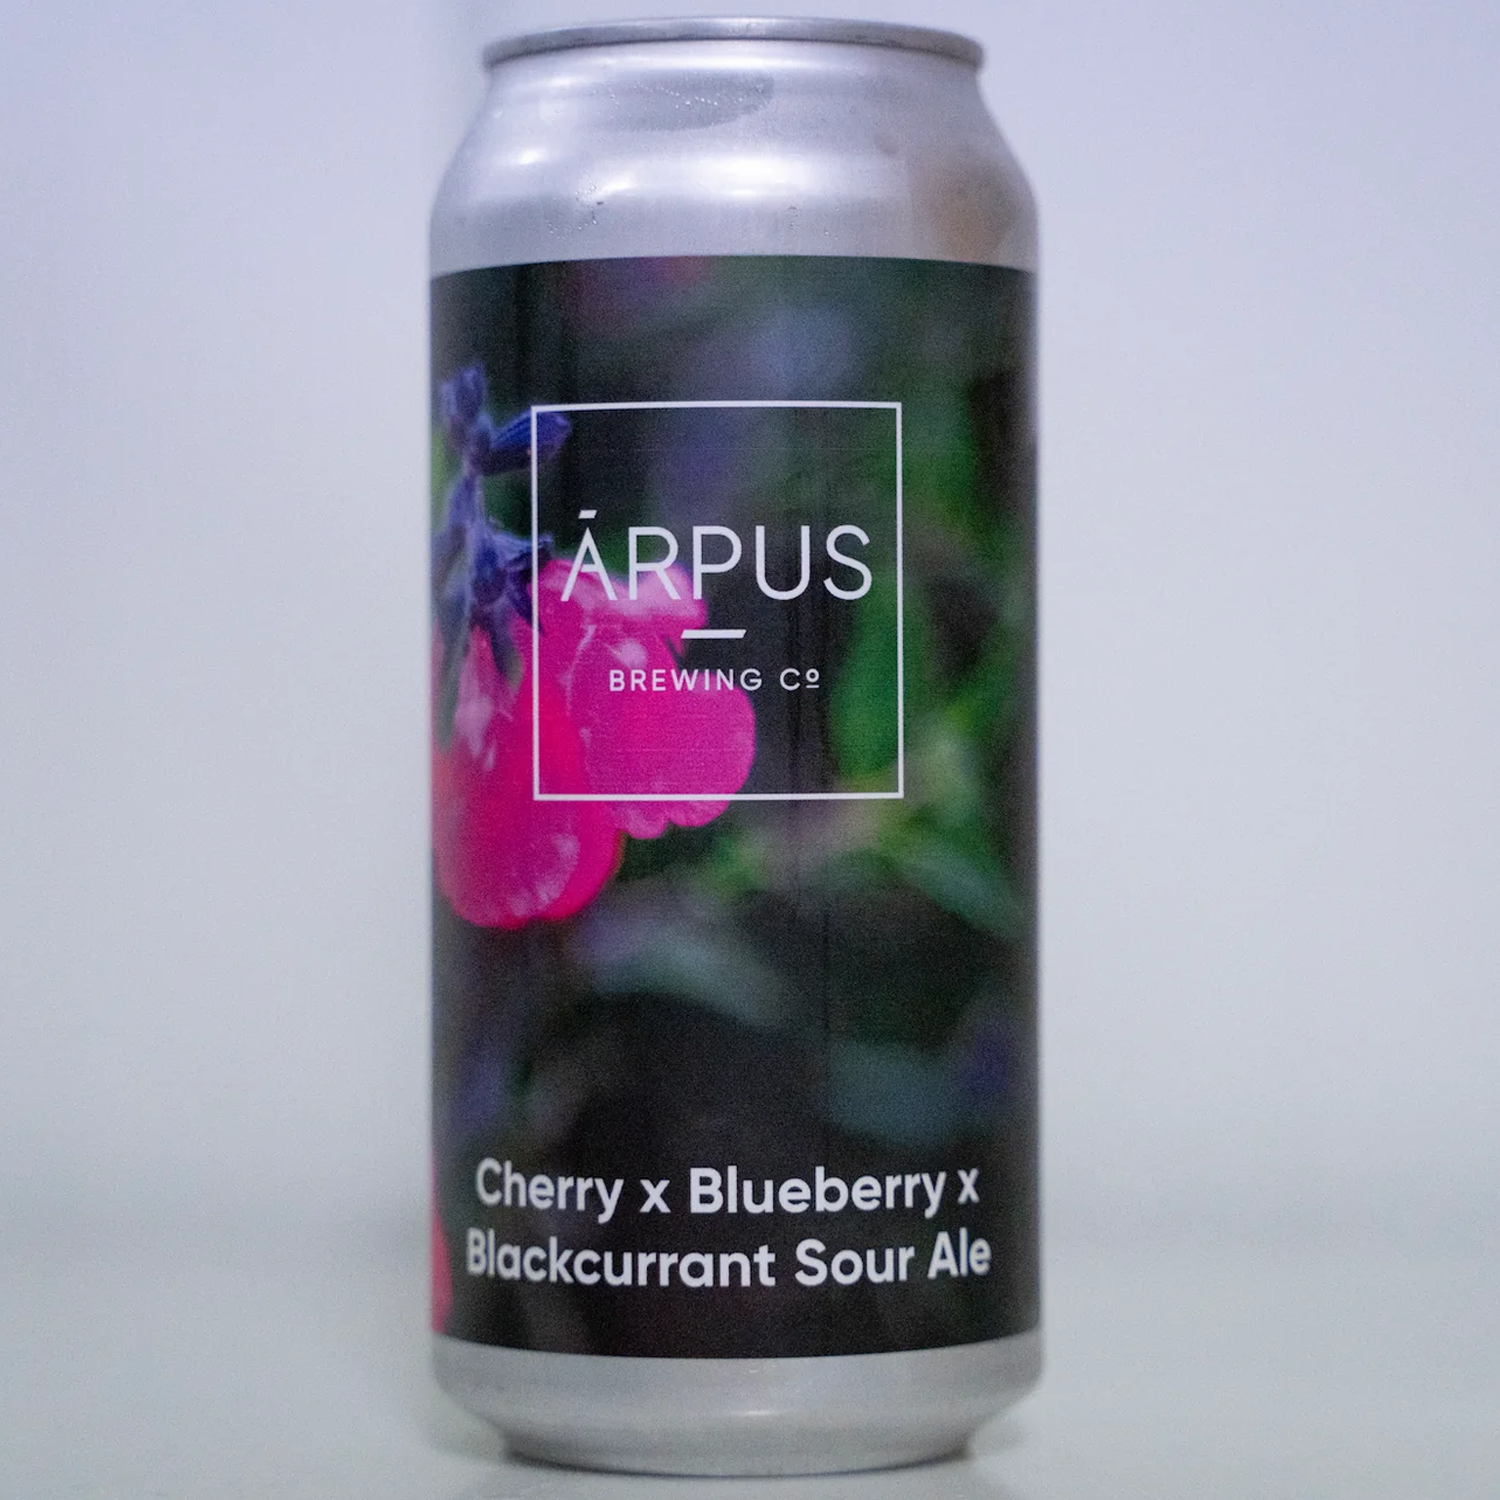 Arpus Cherry x Blueberry x Blackcurrant Sour Ale